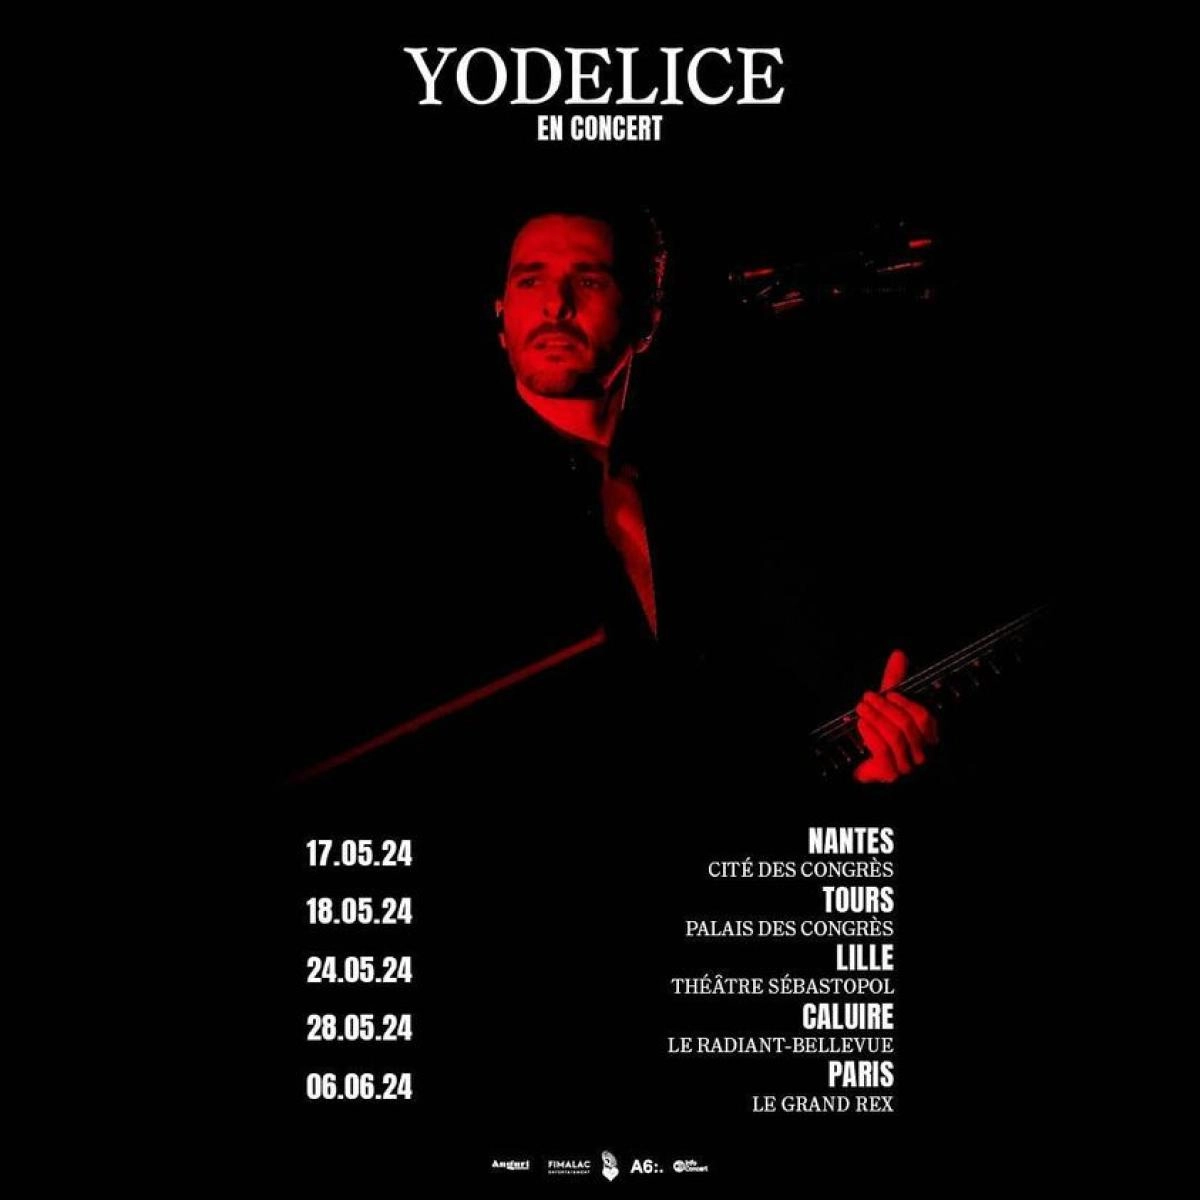 Yodelice at Cité des Congrès Nantes Tickets